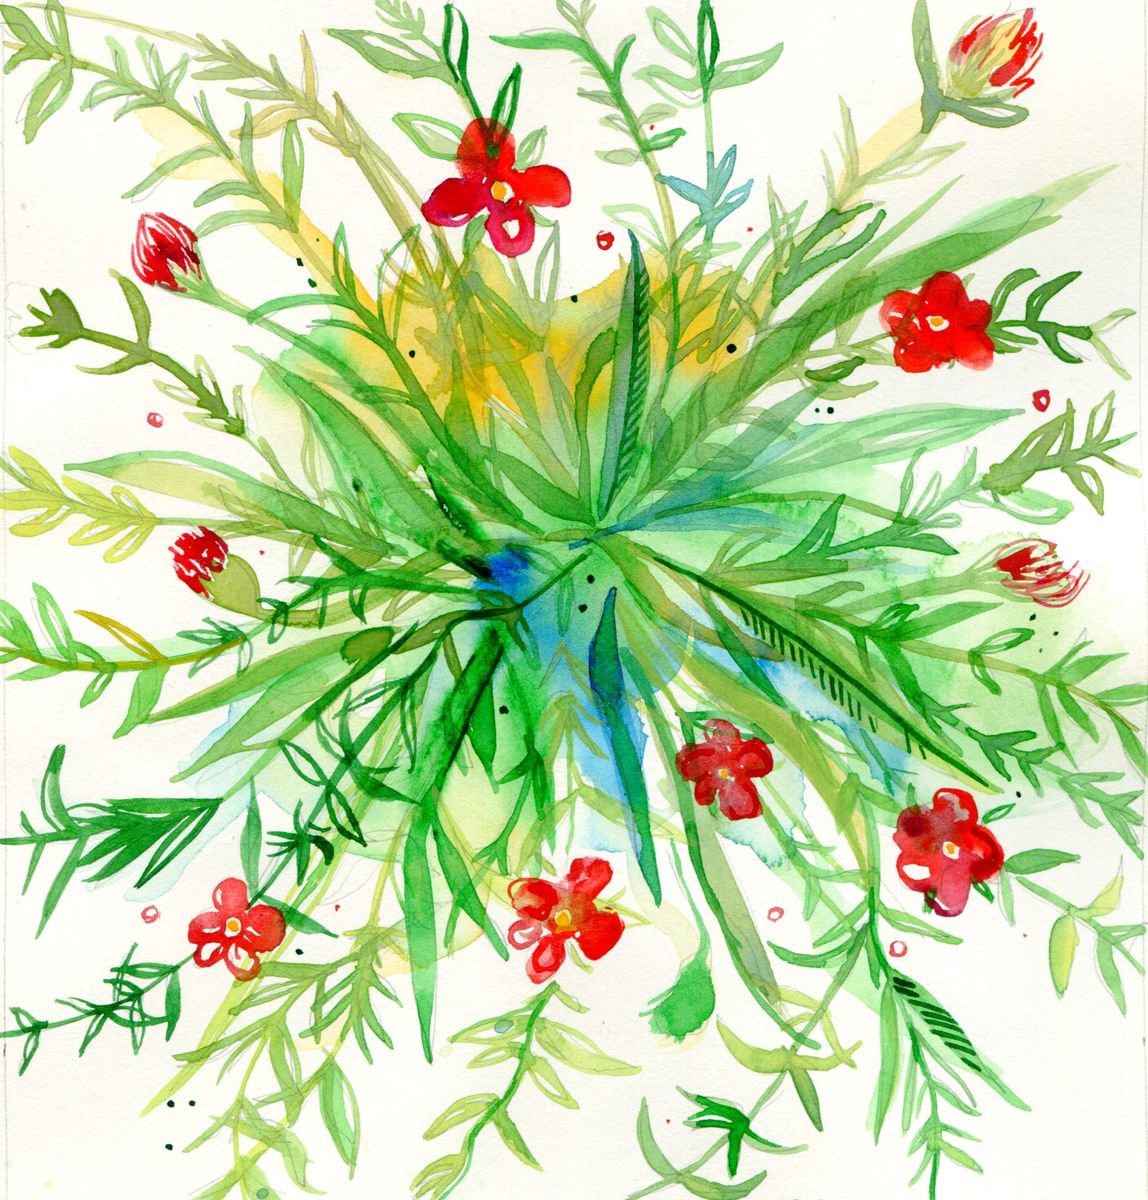 Floral Explosion by Hannah Clark